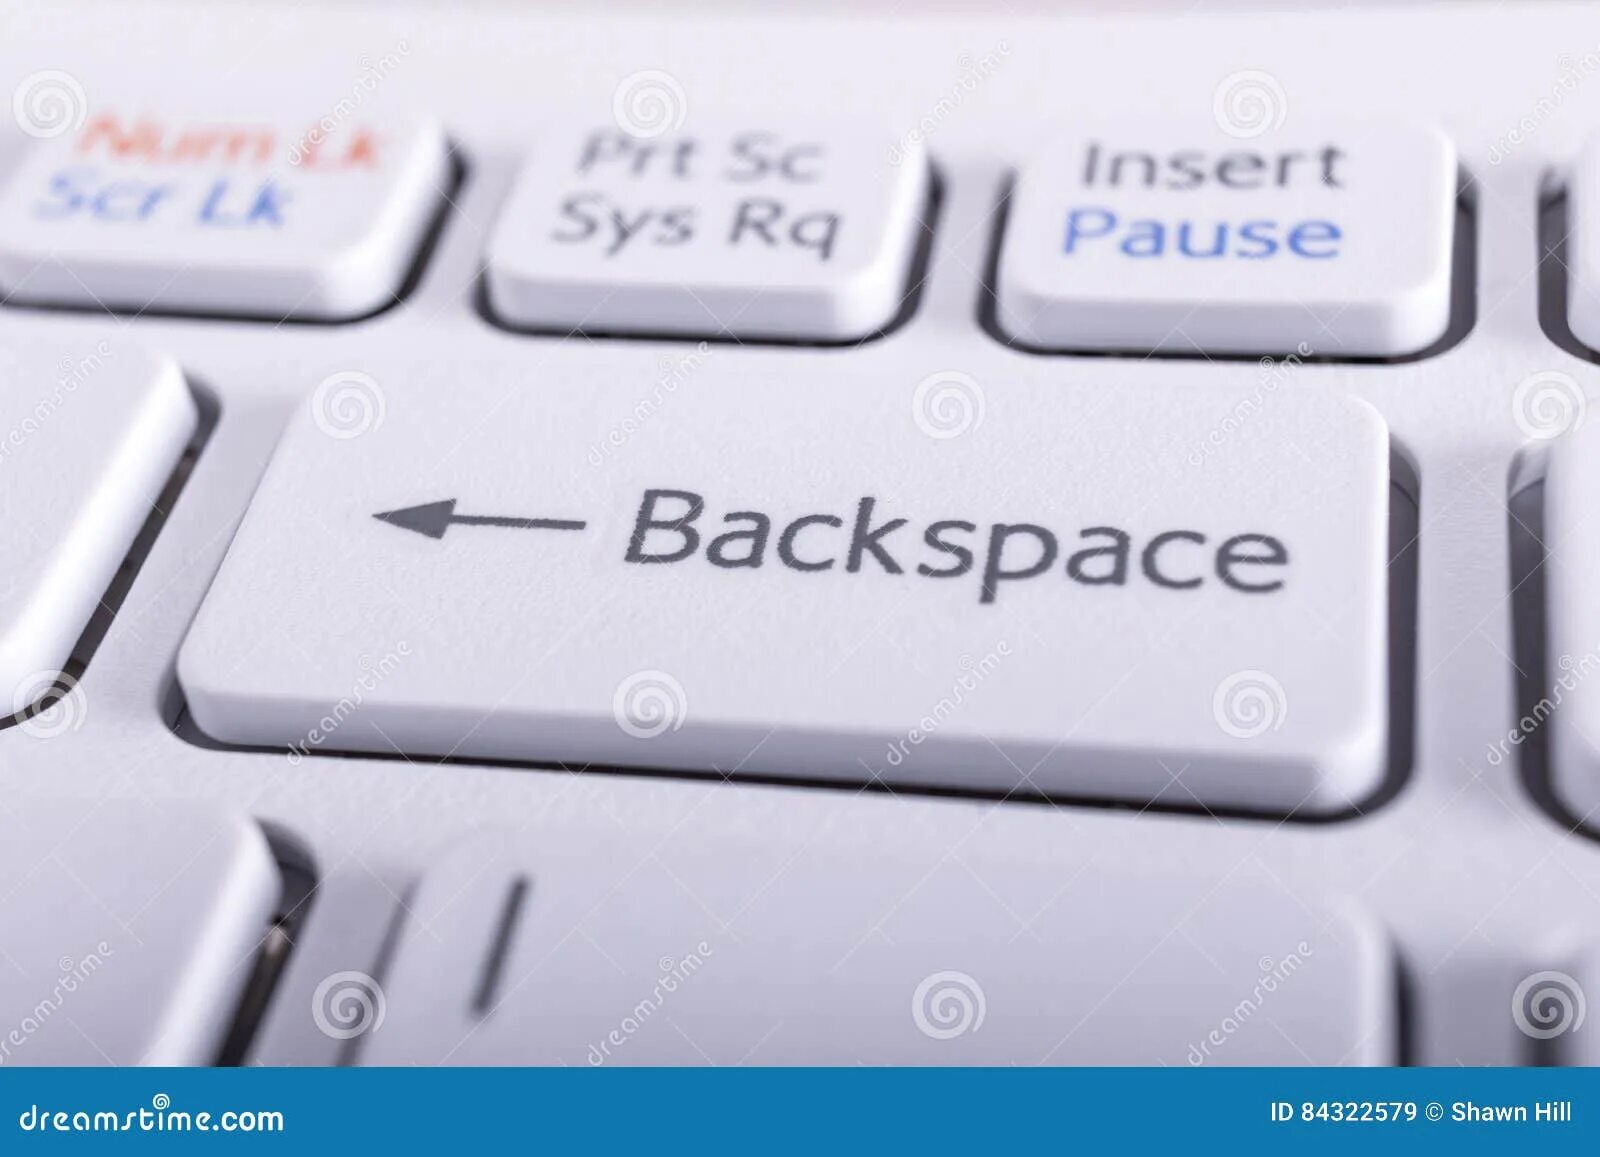 Компьютер backspace. Клавиши бэкспейс на клавиатуре. Кнопка Backspace. Клавиша Backspace на клавиатуре. Кнопка бекспейс на клавиатуре.